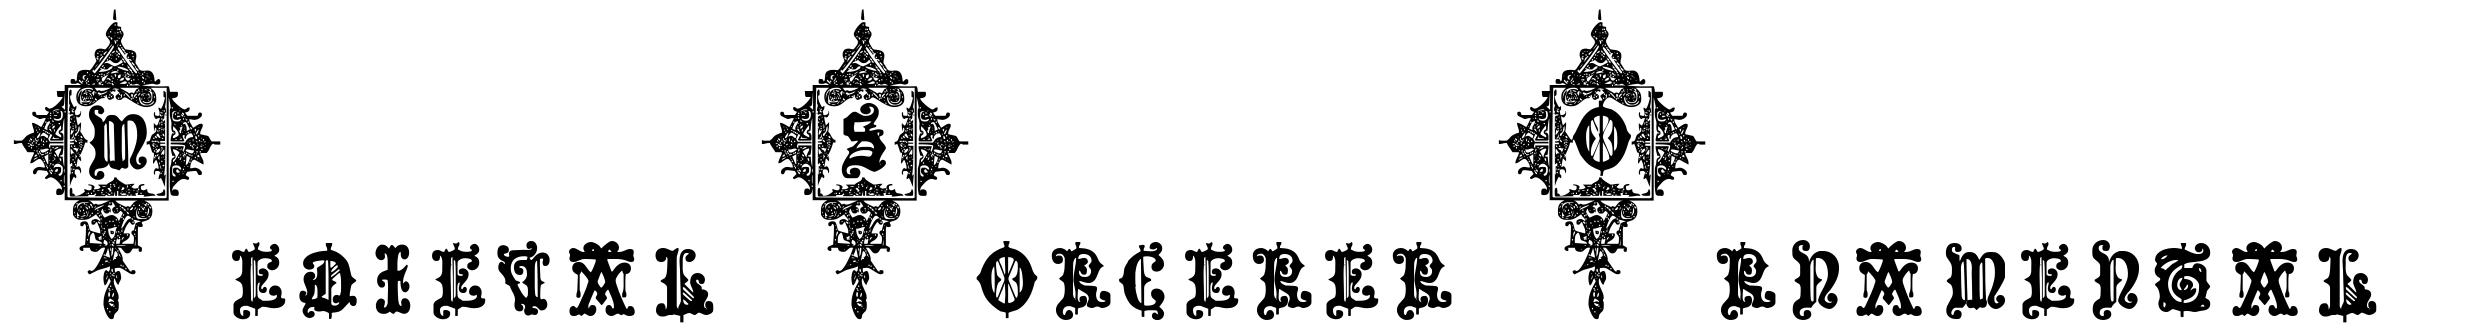 Medieval Sorcerer Ornamental フォント